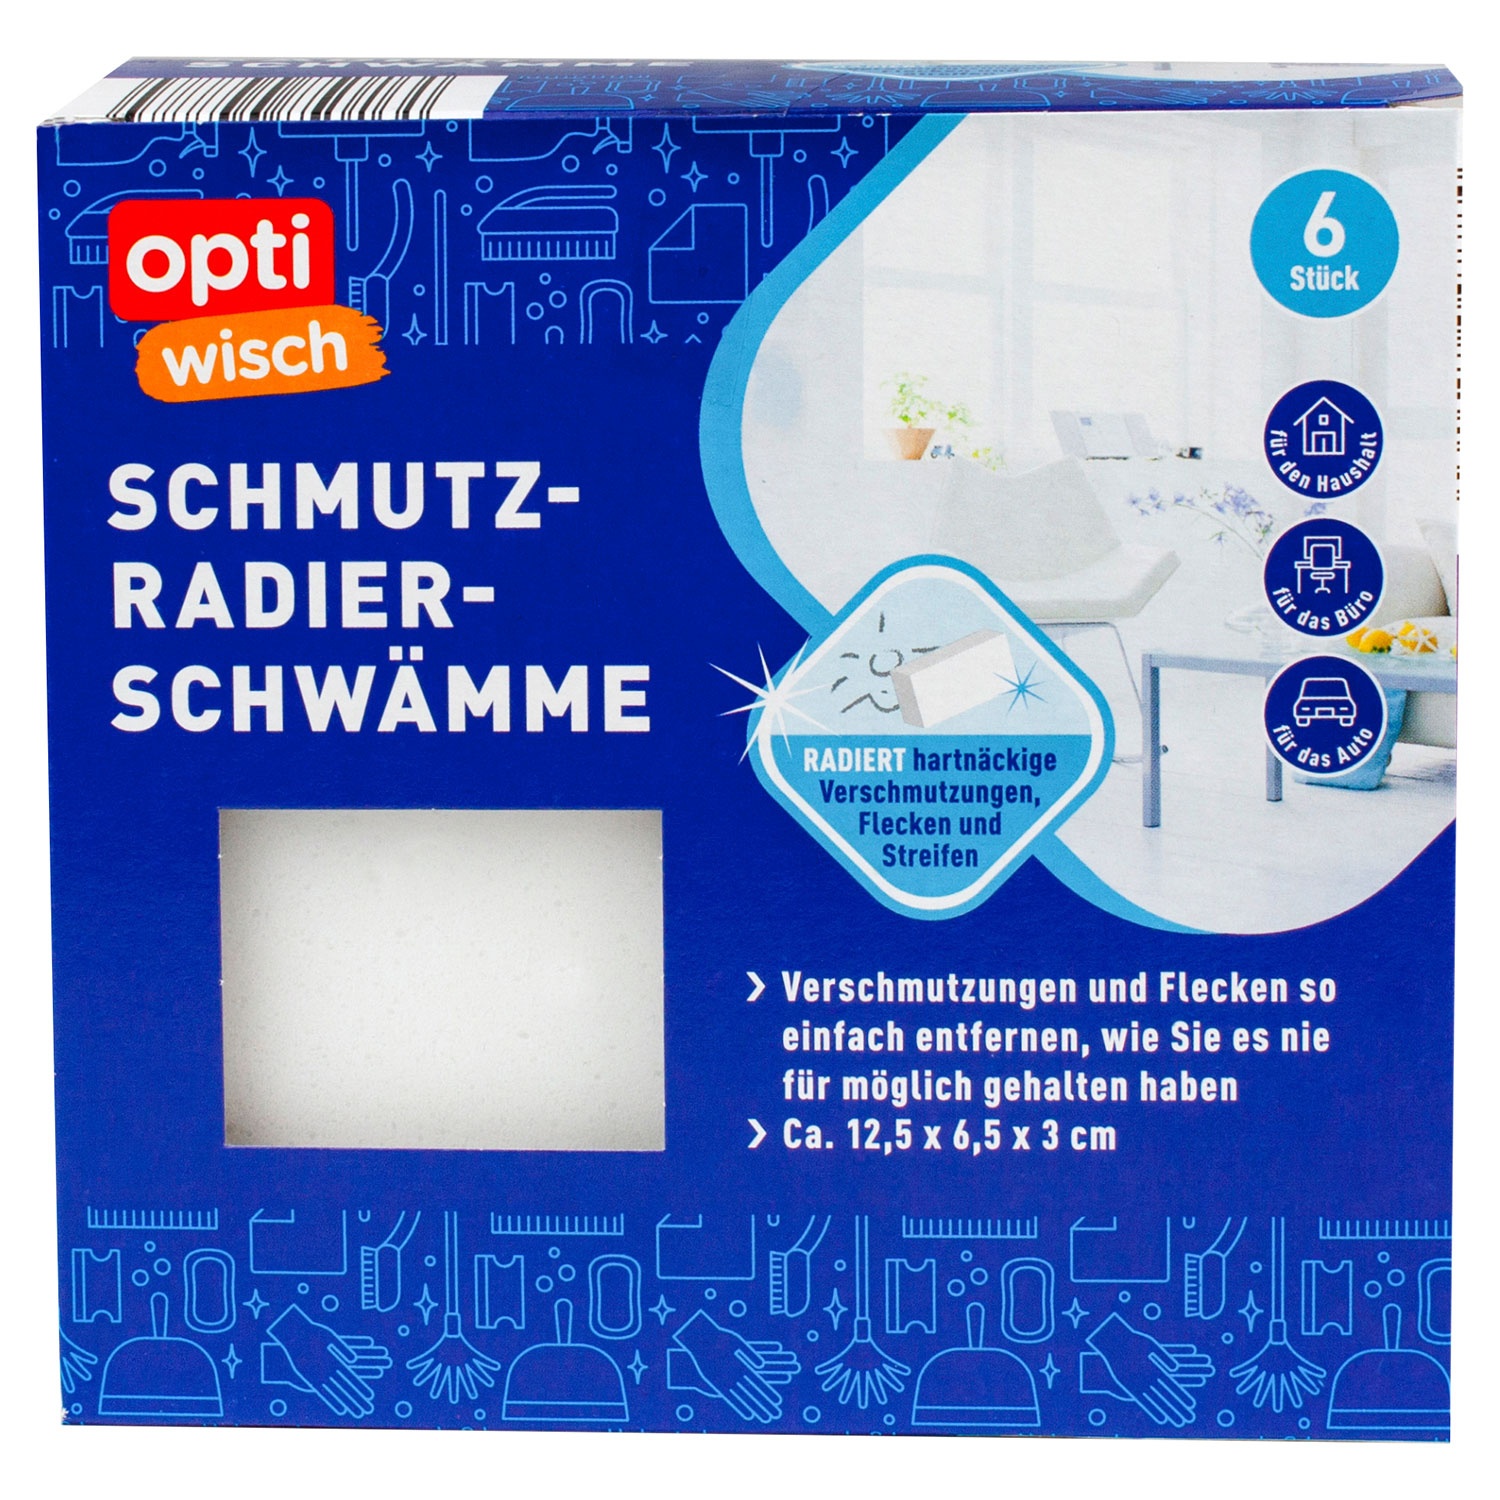 OPTIWISCH Schmutz-Radier-Schwämme, 6er-Packung